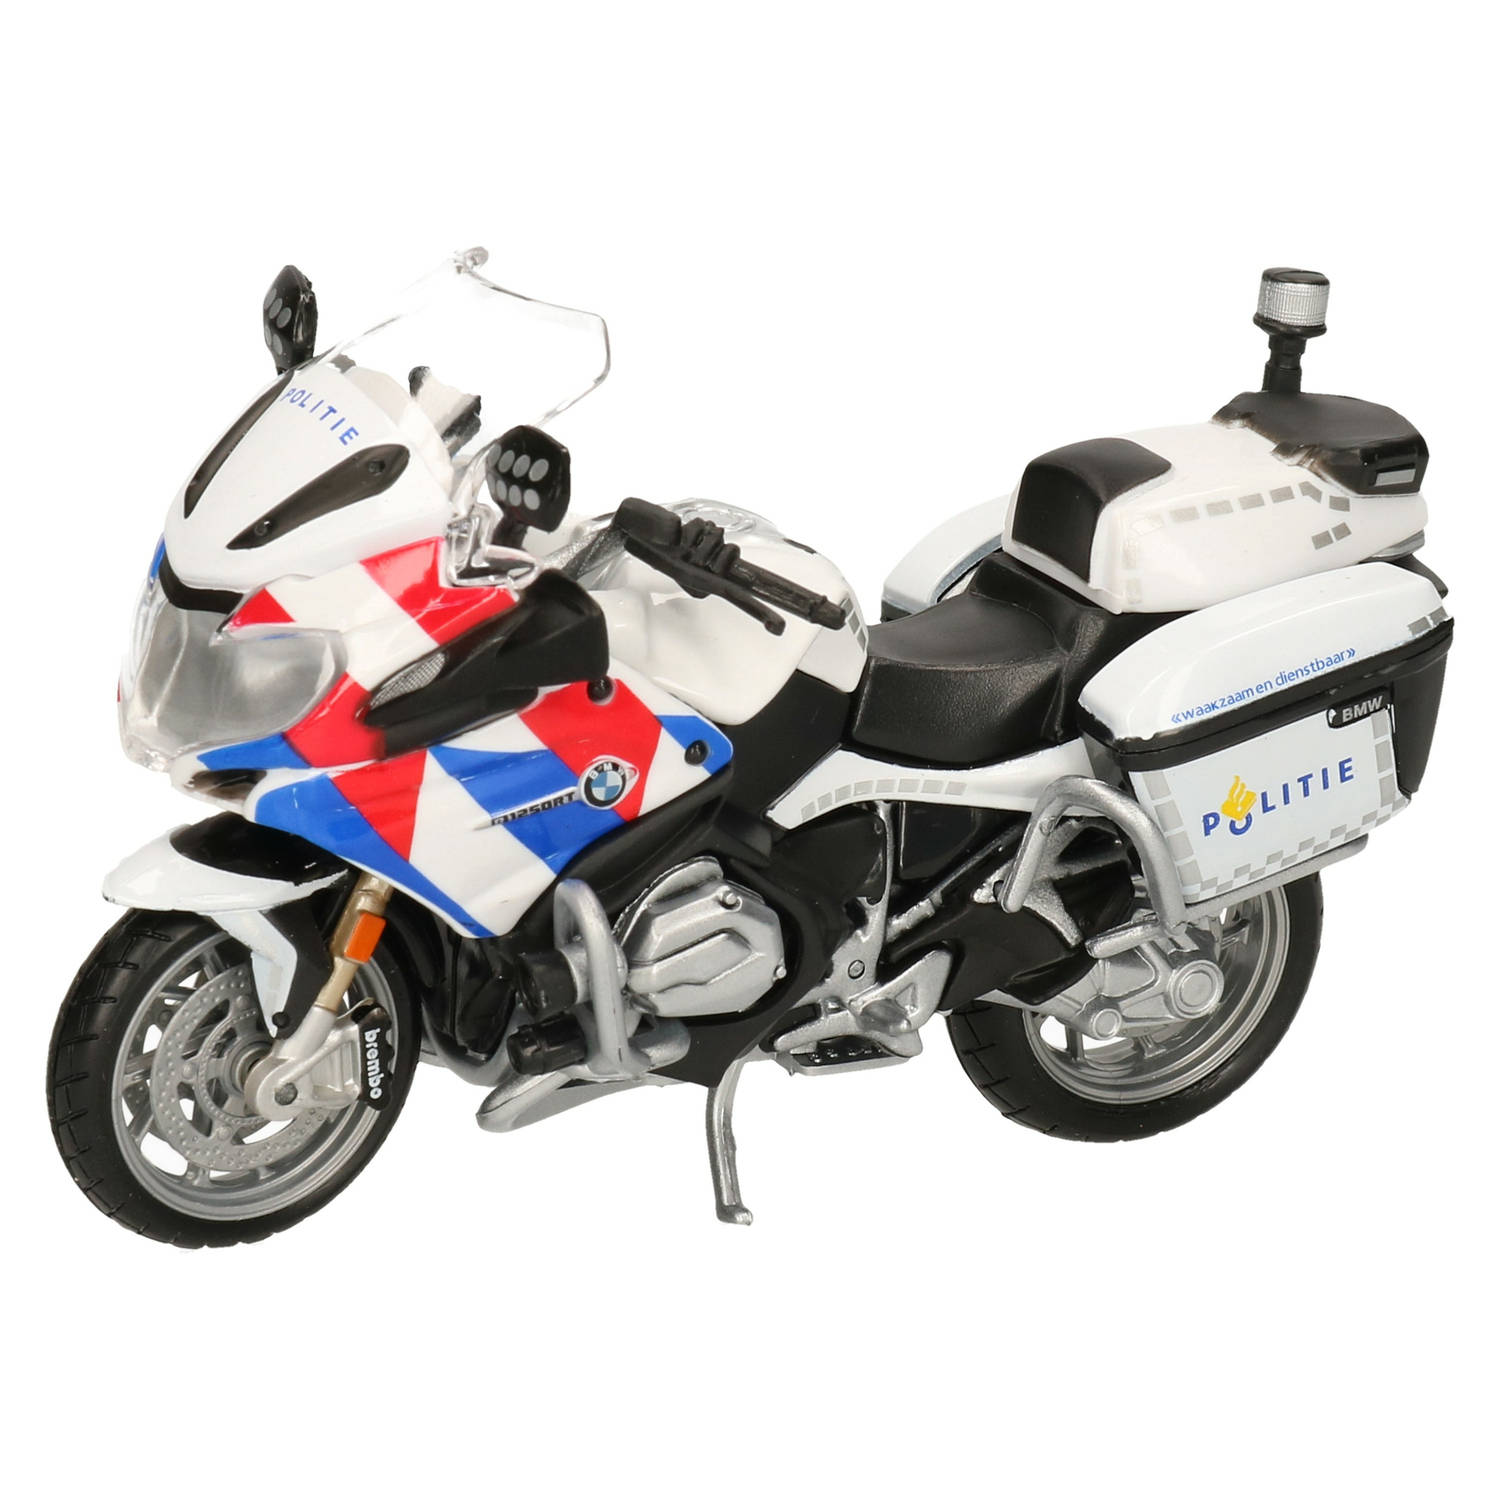 Maisto model motor/speelgoed motor BMW politie - wit - schaal 1:18/12 x 5 x 8 cm